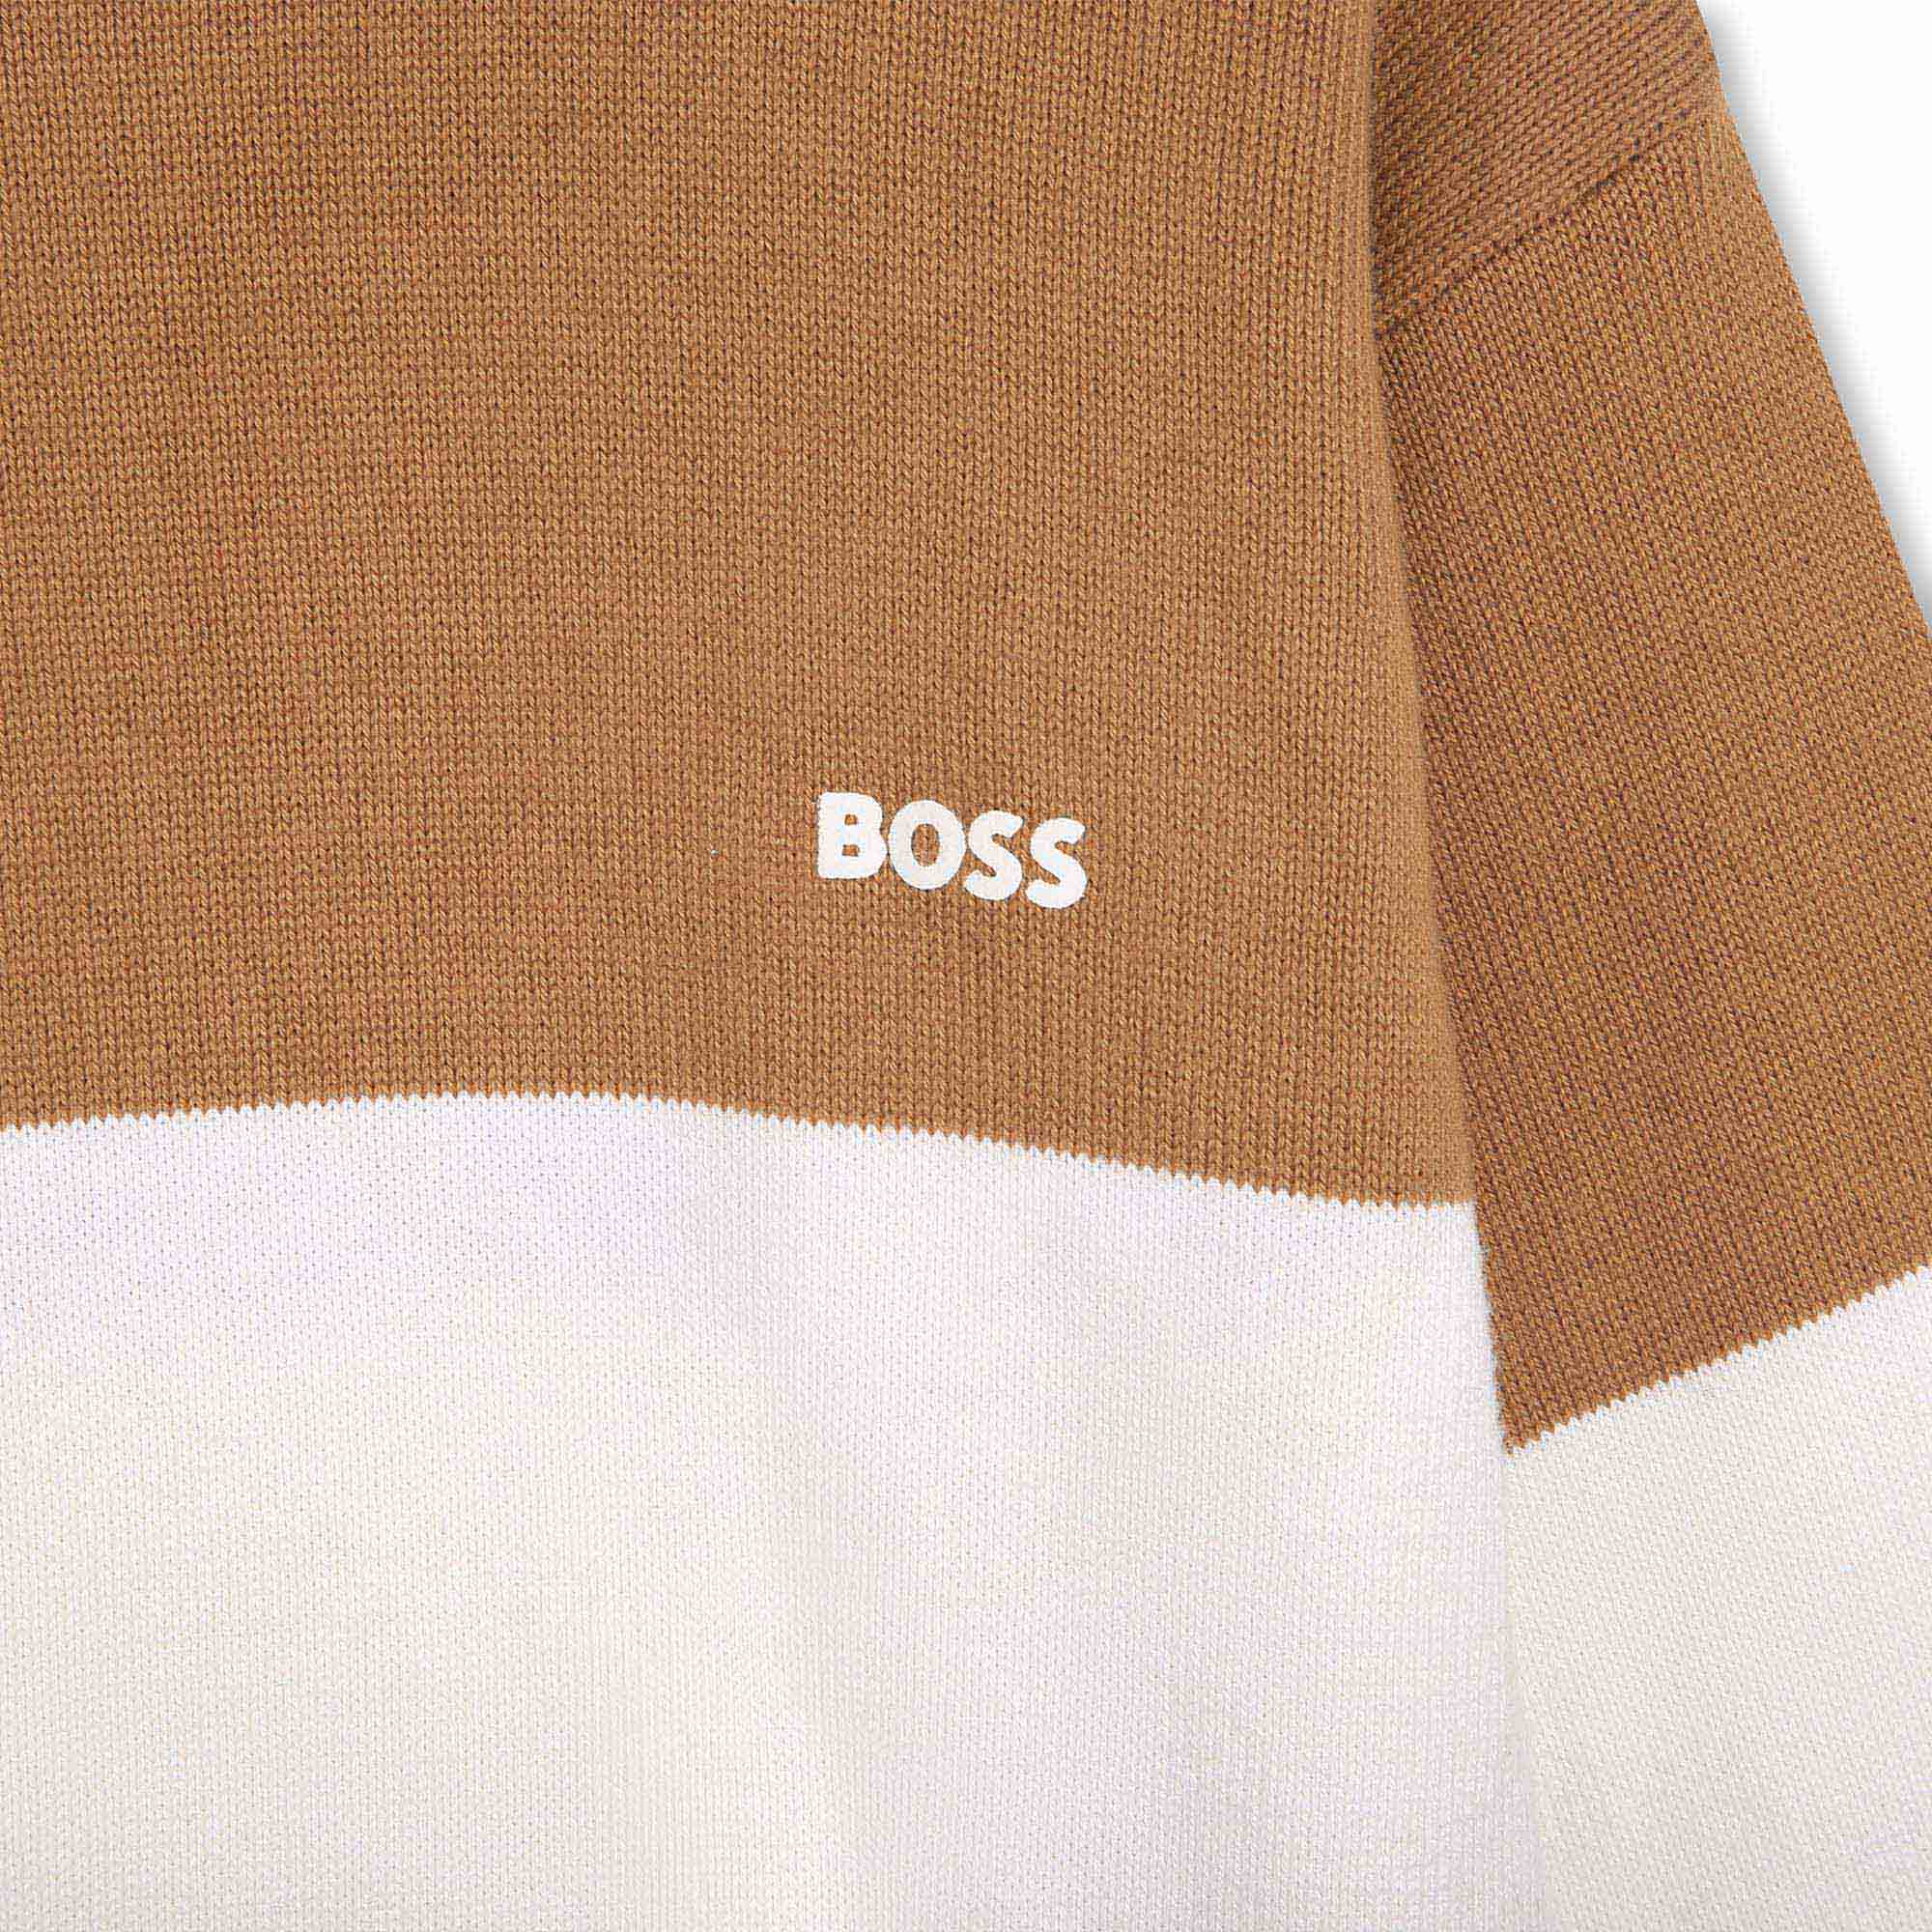 Vestito maglione cotone e lana BOSS Per BAMBINA